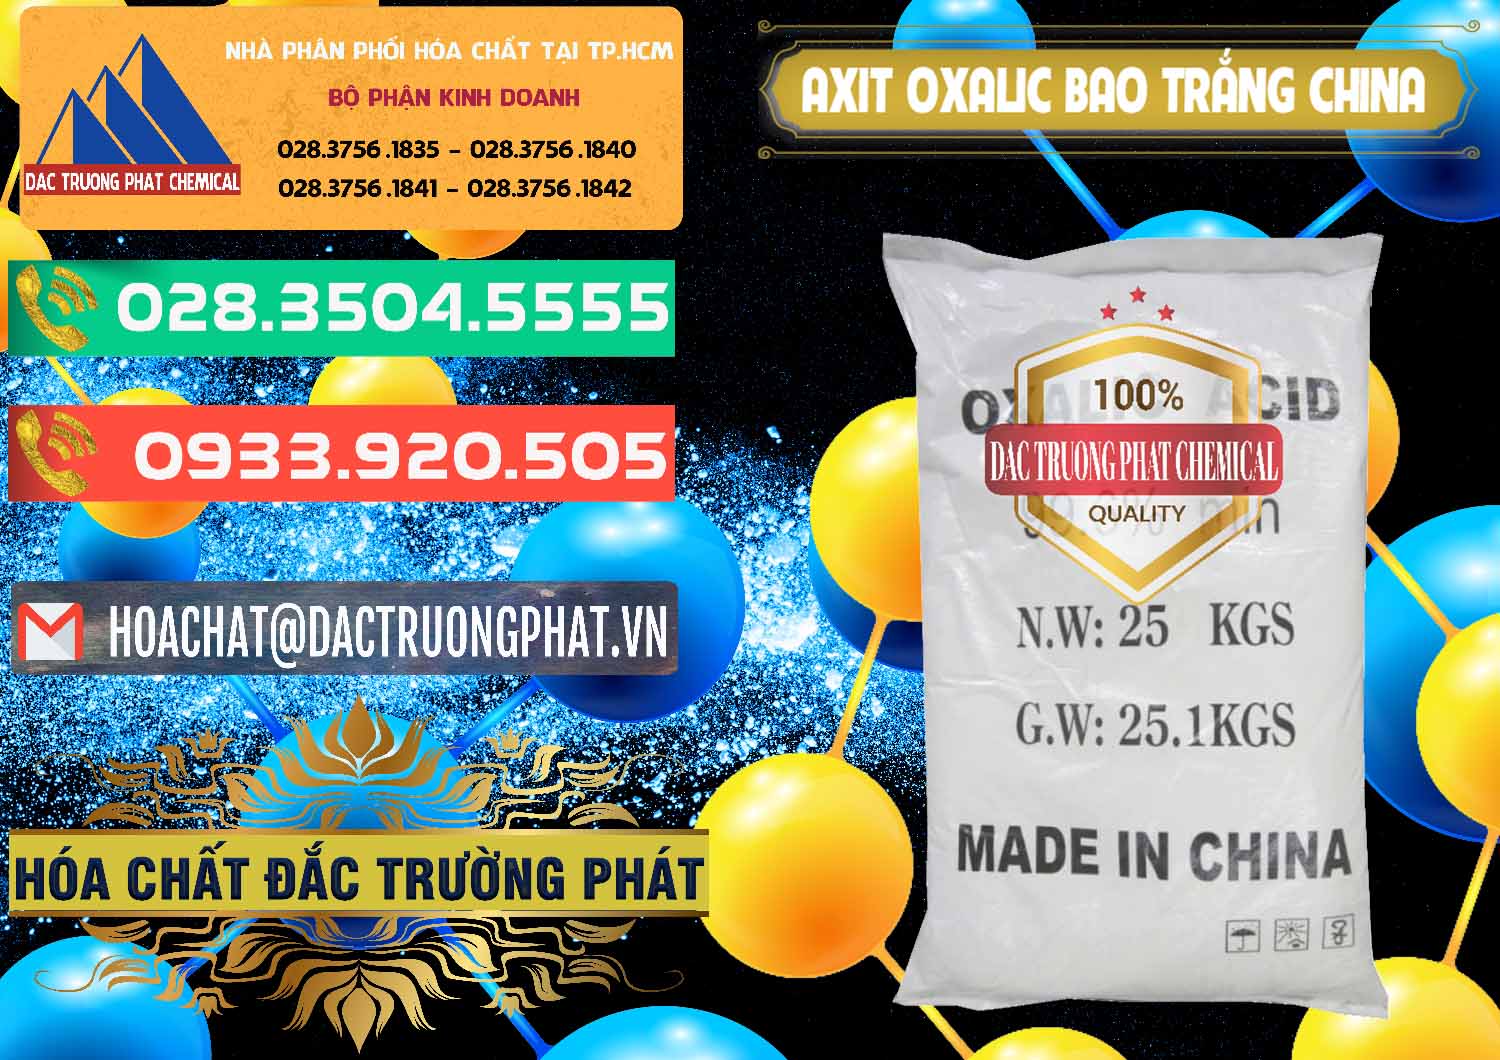 Cty phân phối ( bán ) Acid Oxalic – Axit Oxalic 99.6% Bao Trắng Trung Quốc China - 0270 - Nơi phân phối và cung cấp hóa chất tại TP.HCM - congtyhoachat.com.vn